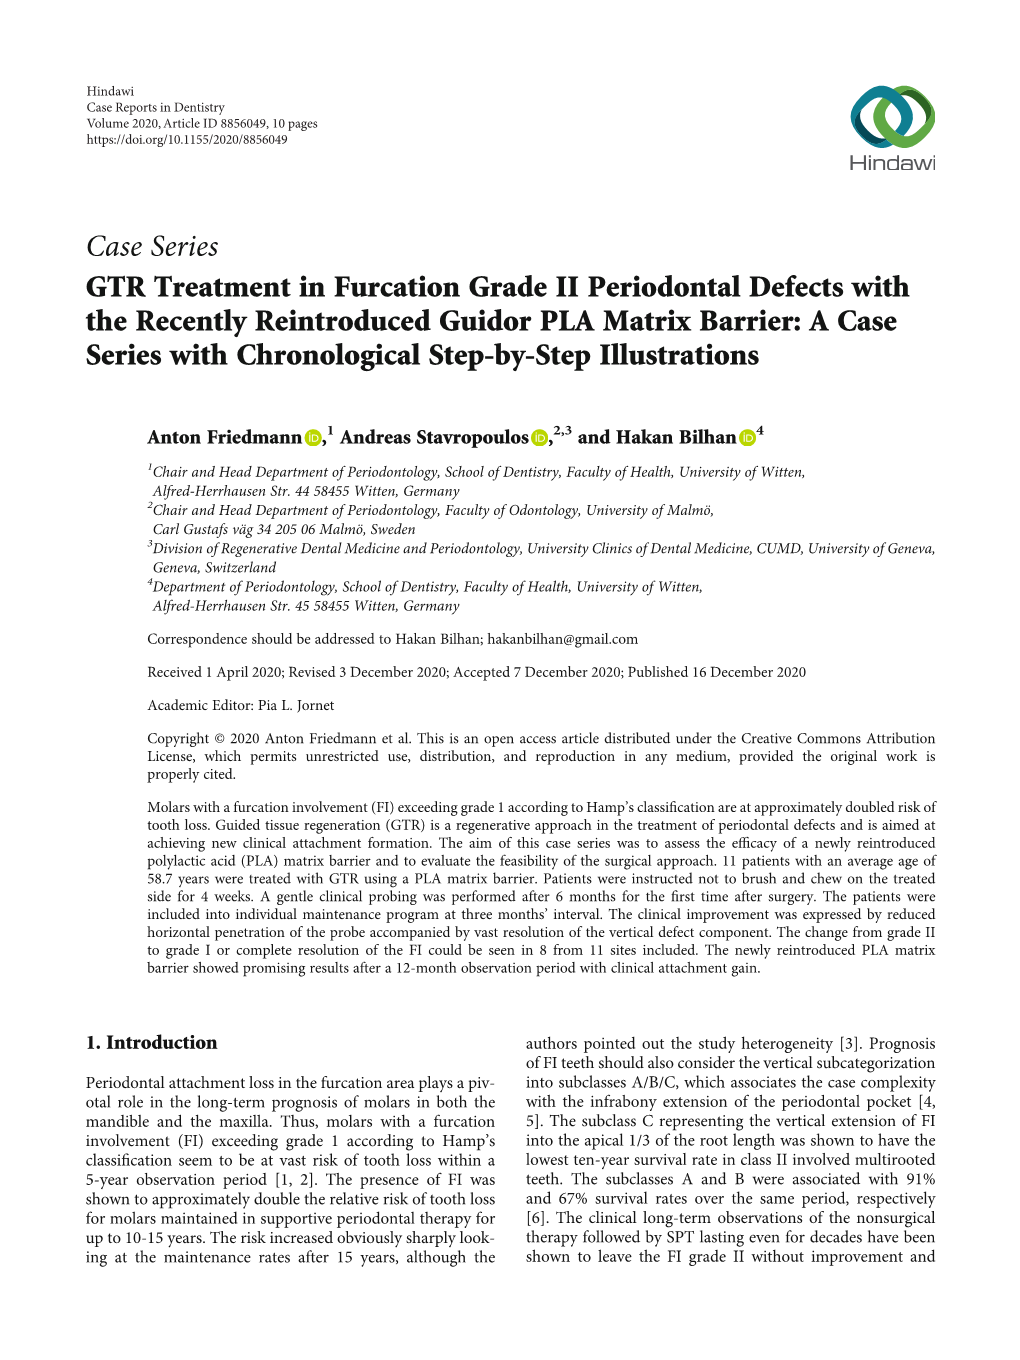 Case Series GTR Treatment in Furcation Grade II Periodontal